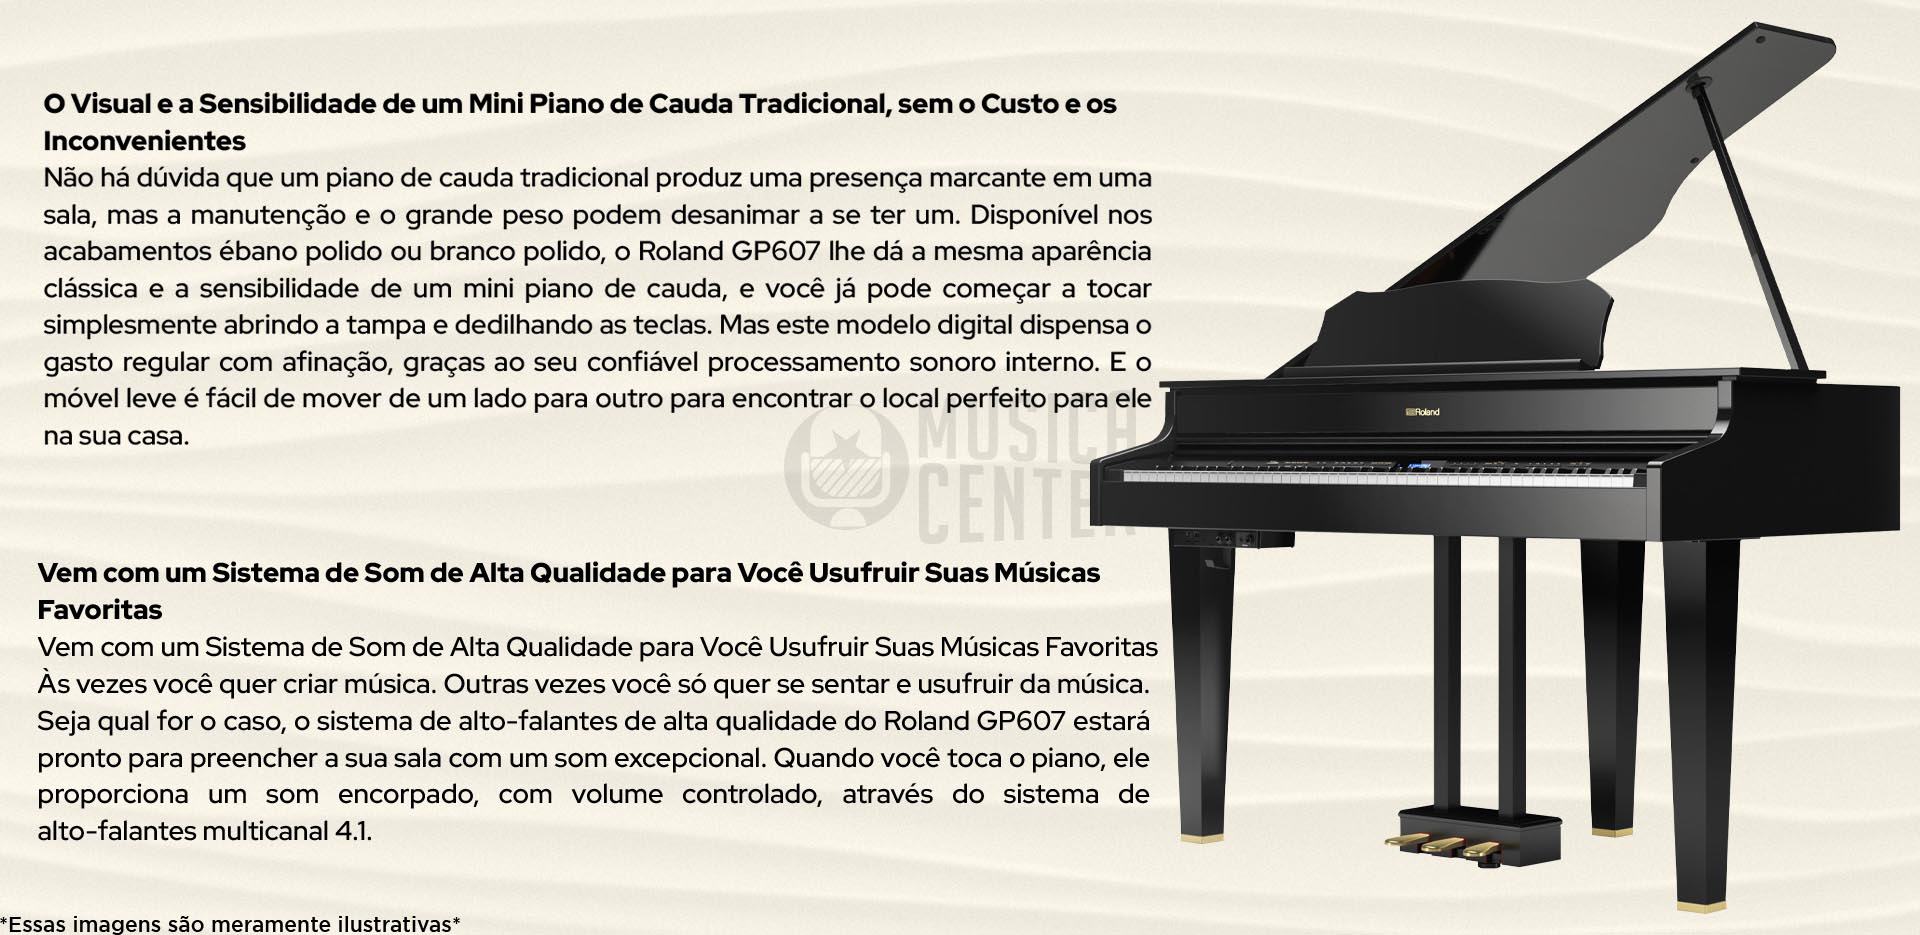 Sobre o Grand Piano Digital Roland GP-607